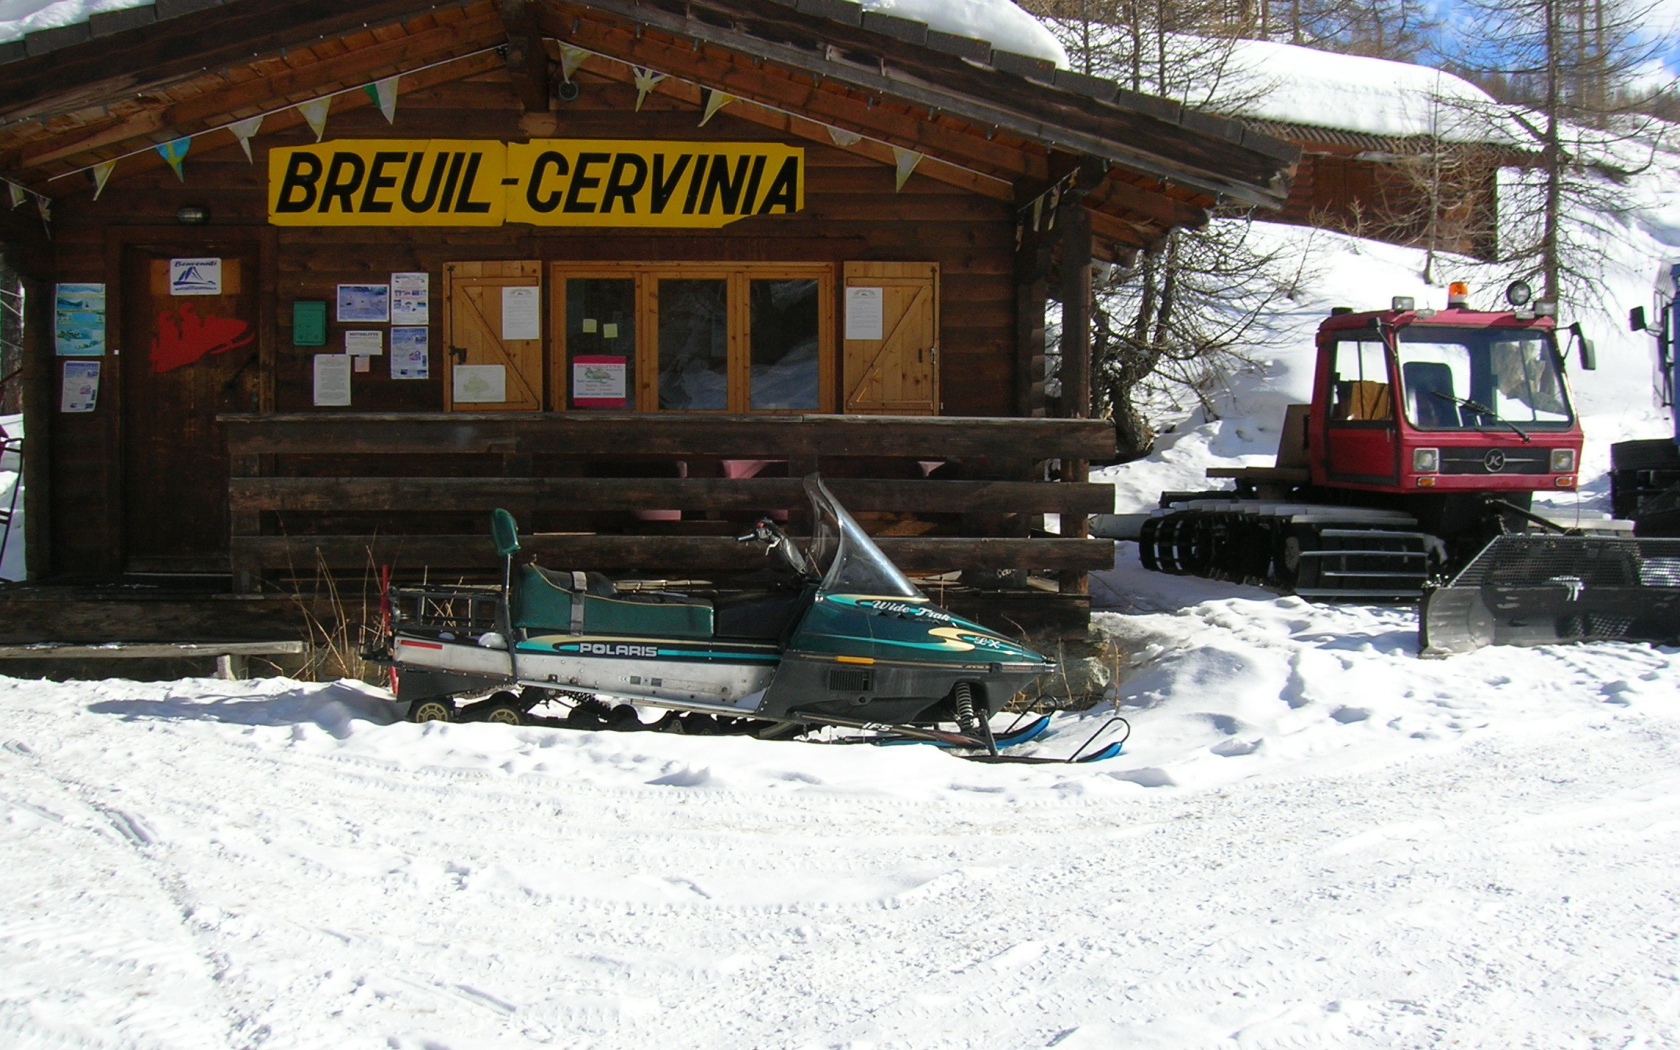 Администрация на горнолыжном курорте Червиния, Италия